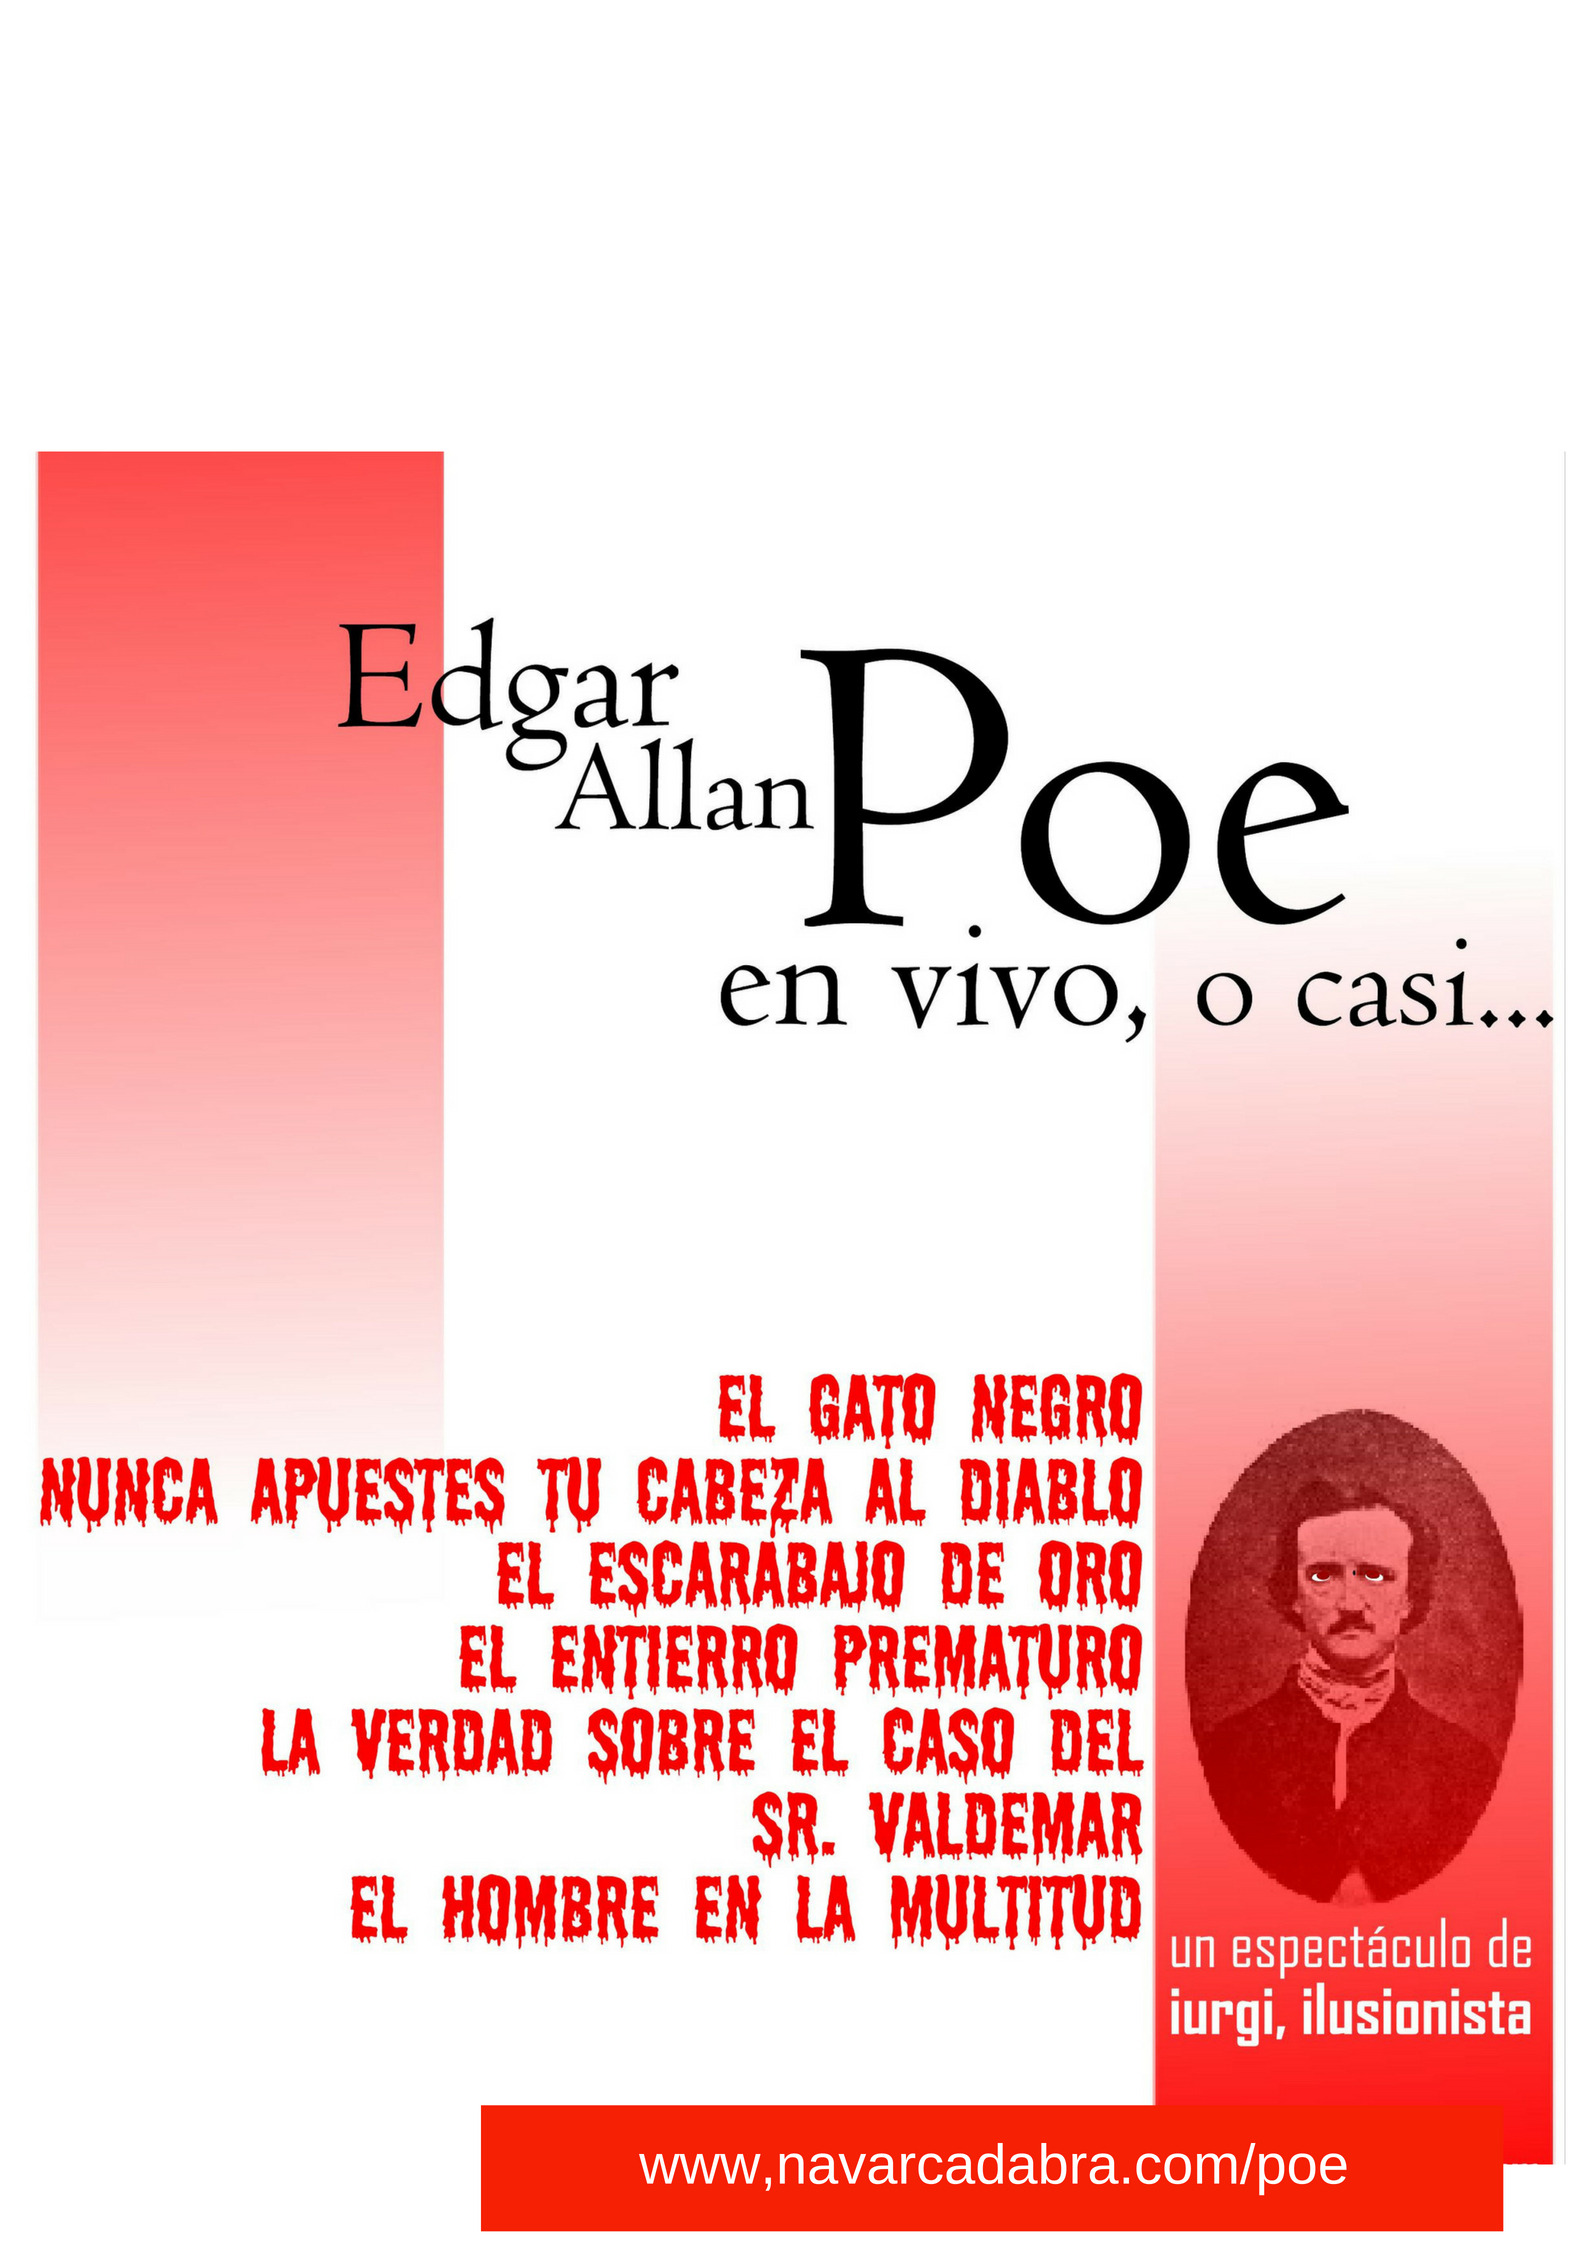 Una invitación a leer a Poe después de experimentar lo extraño.